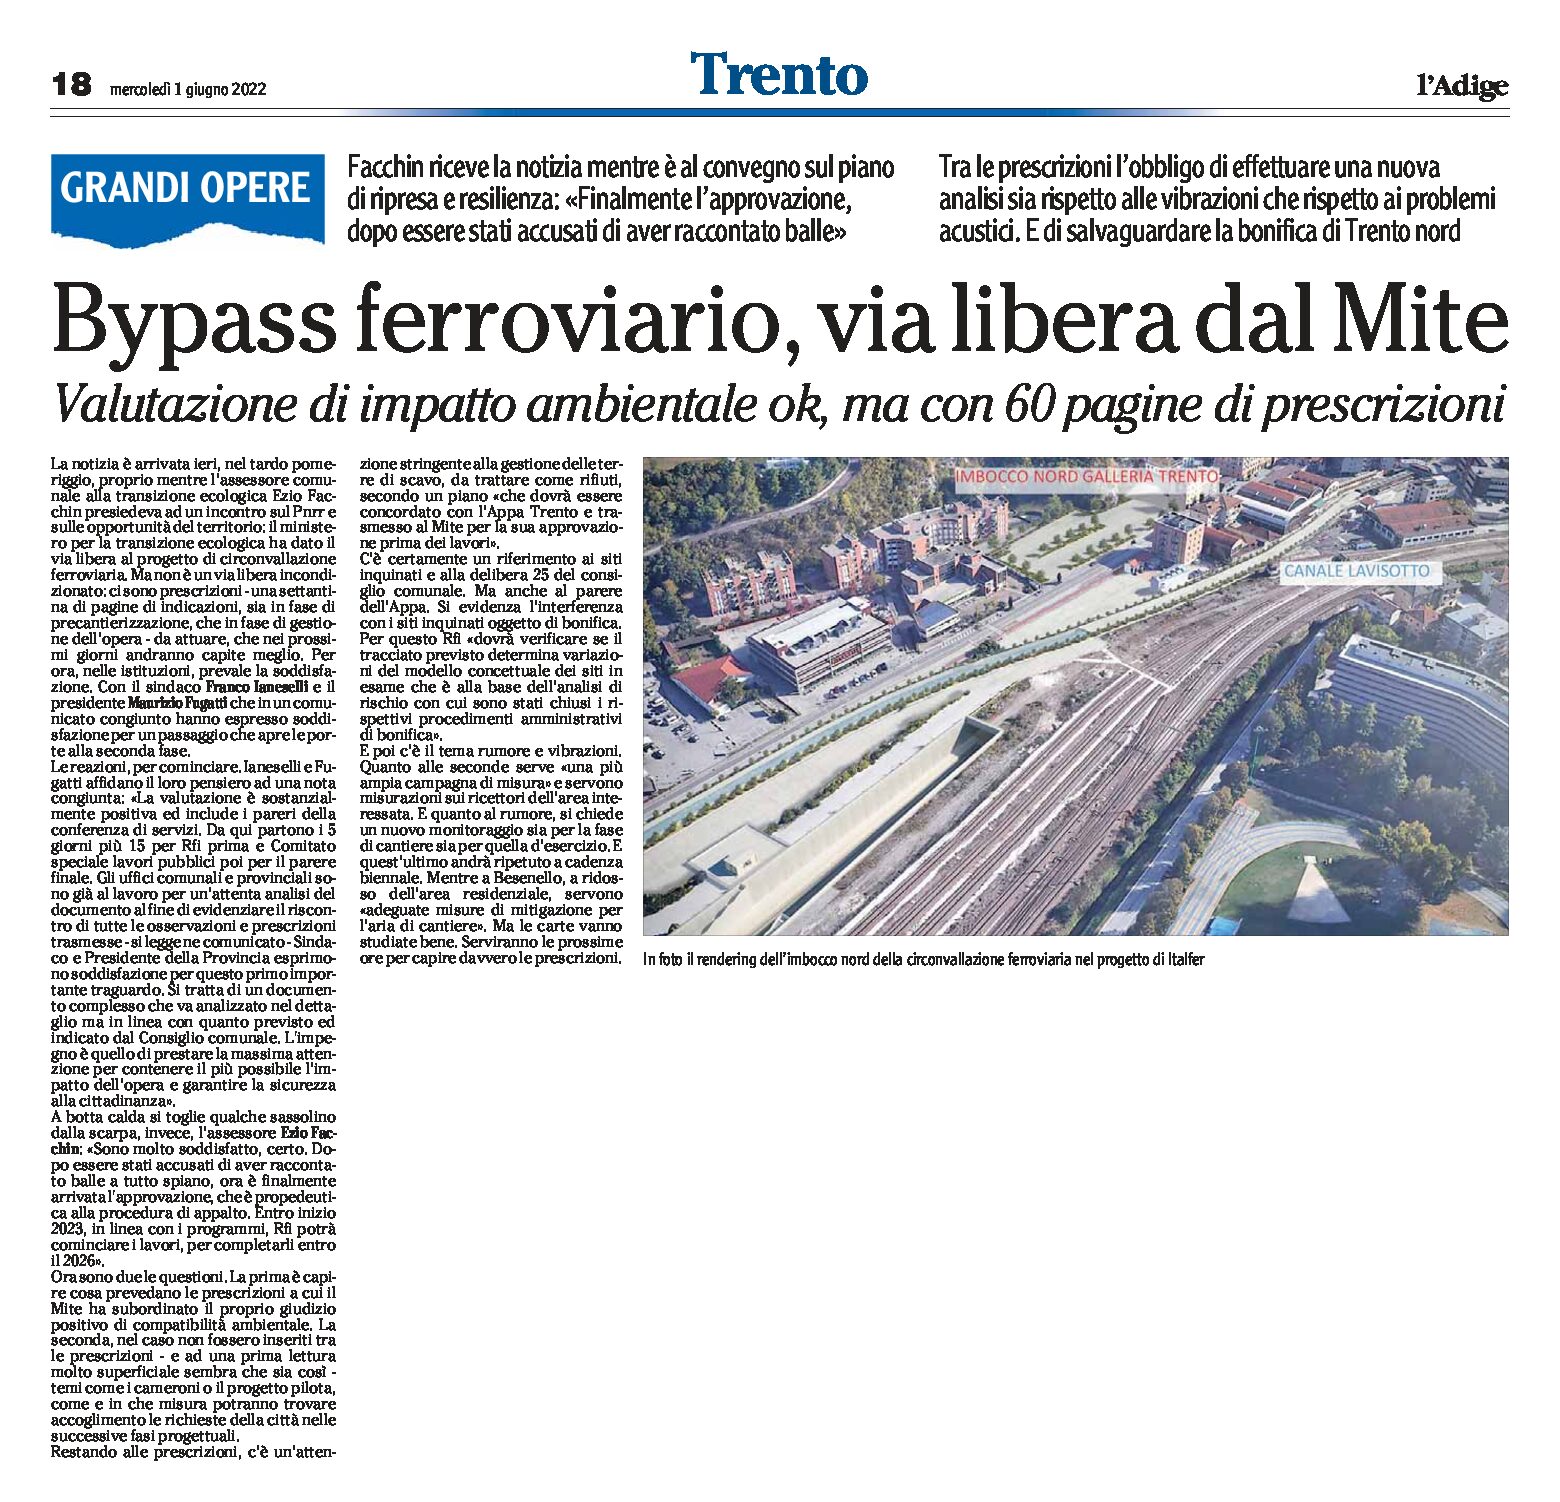 Trento, bypass ferroviario: via libera dal Mite. Valutazione impatto ambientale ok, ma con 60 pagine di prescrizioni